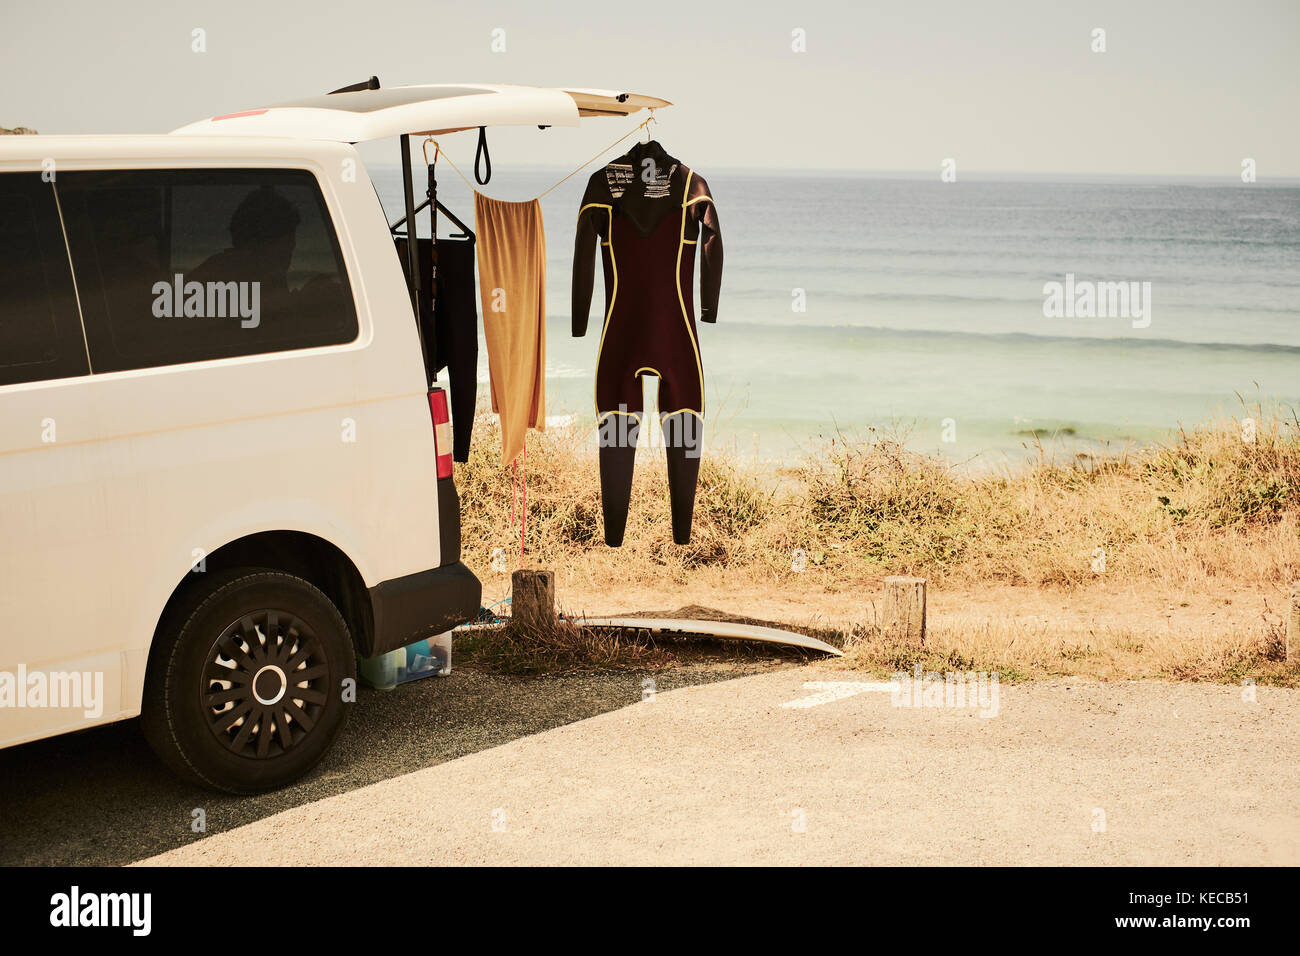 Un surfers van parcheggiato presso la spiaggia con un tipo di muta appendere fuori ad asciugare Foto Stock